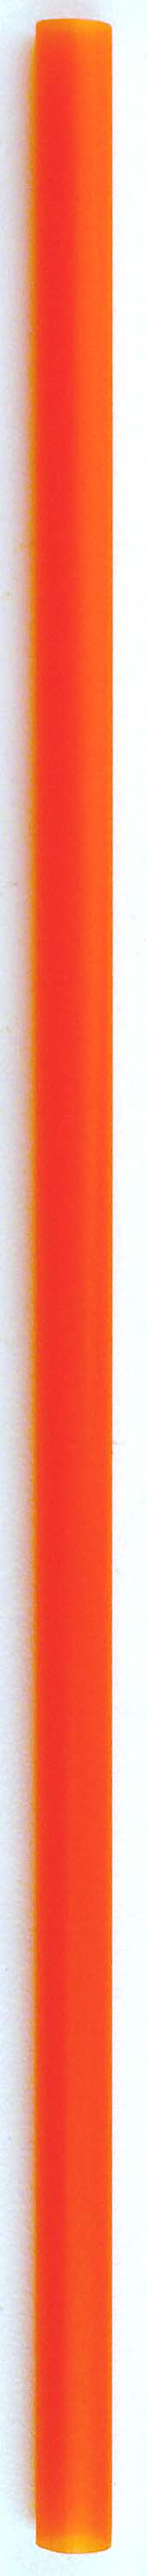 【販売終了】ストローストレート6×210   オレンジ(バラ)500本